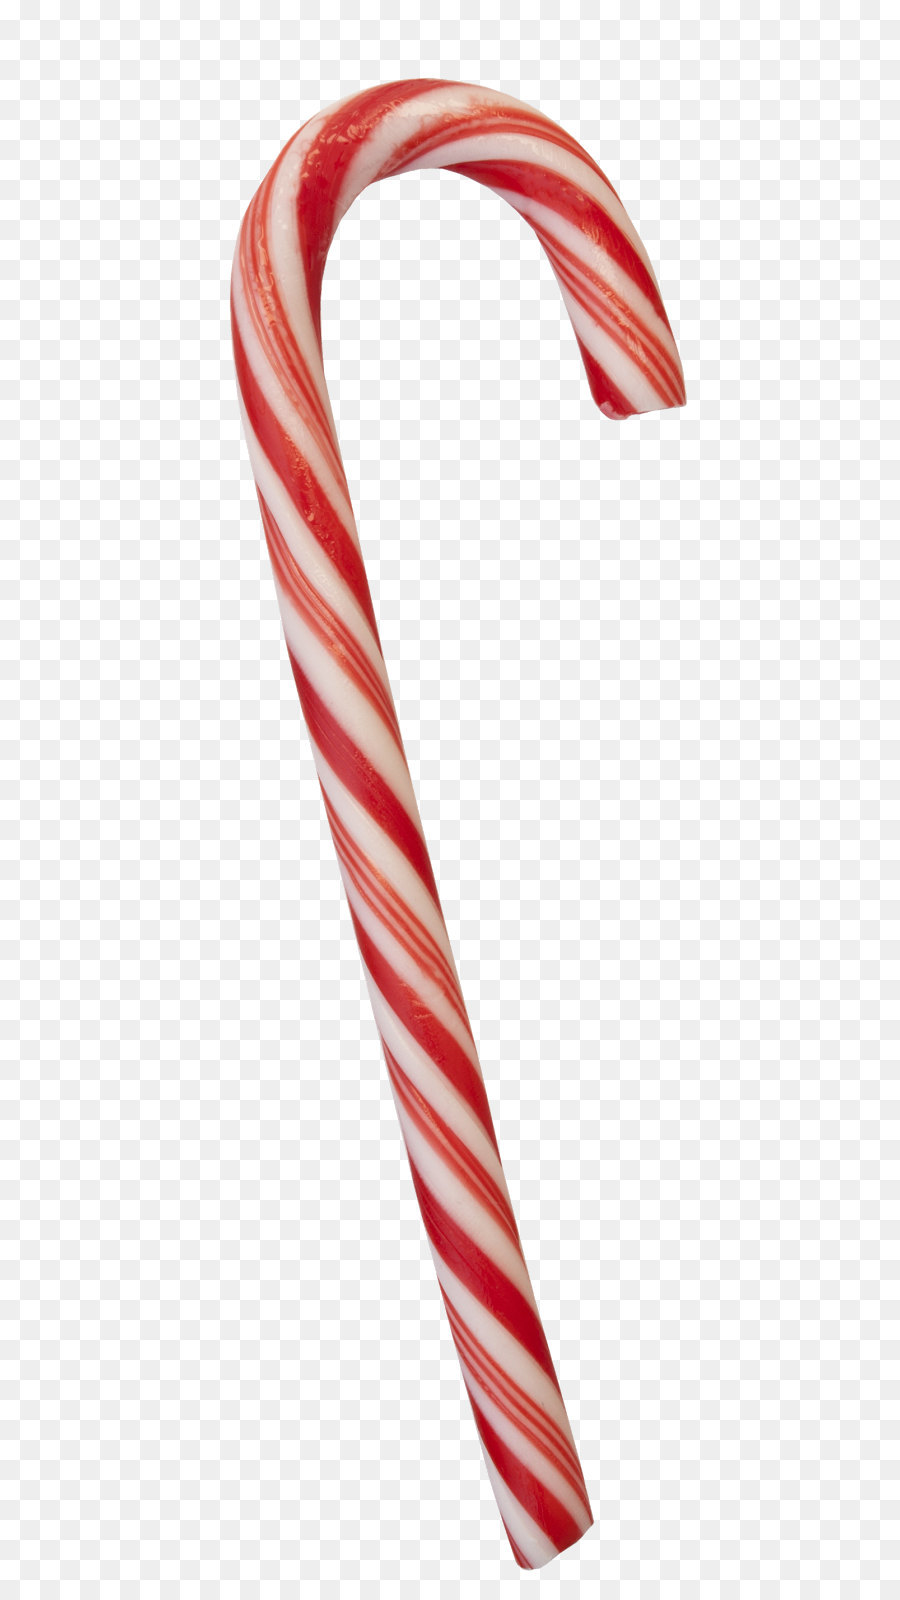 Candy cane Hamlet Rot Weiße Schrift - Weihnachten Süßigkeiten PNG